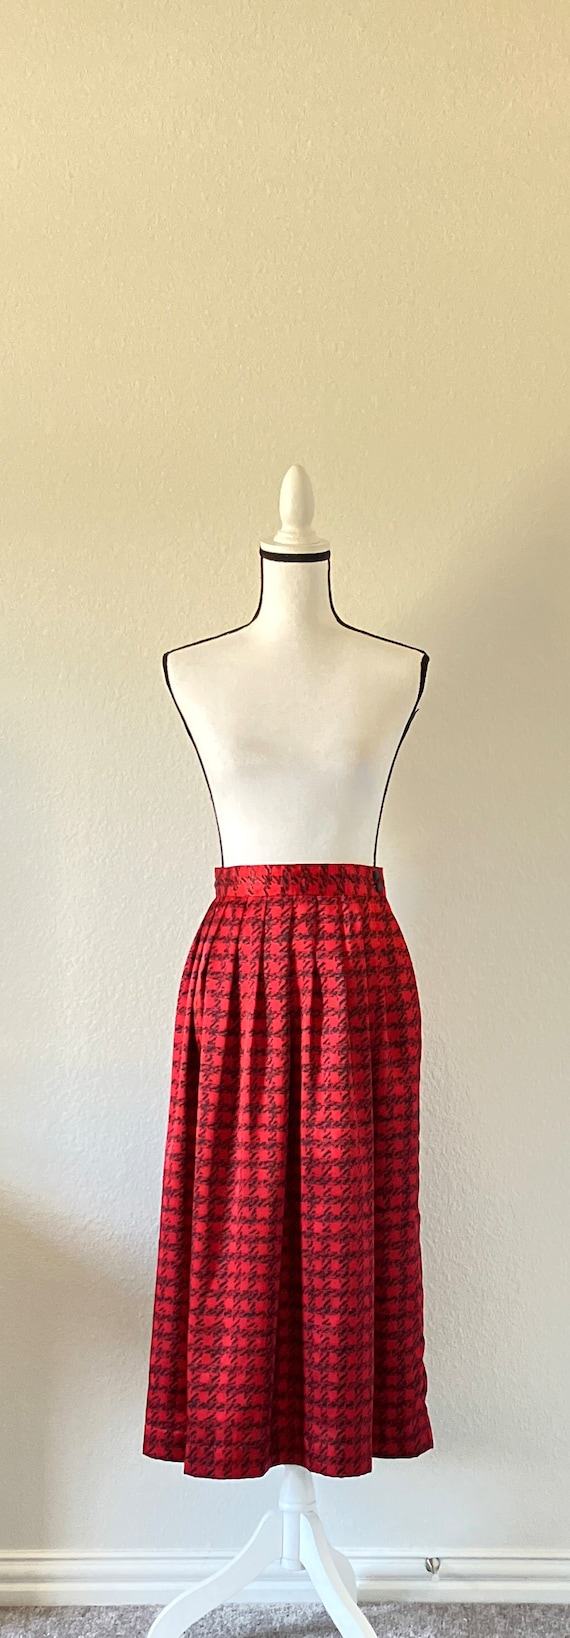 1980s Red and Black Houndstooth Skirt, Vintage Gr… - image 2